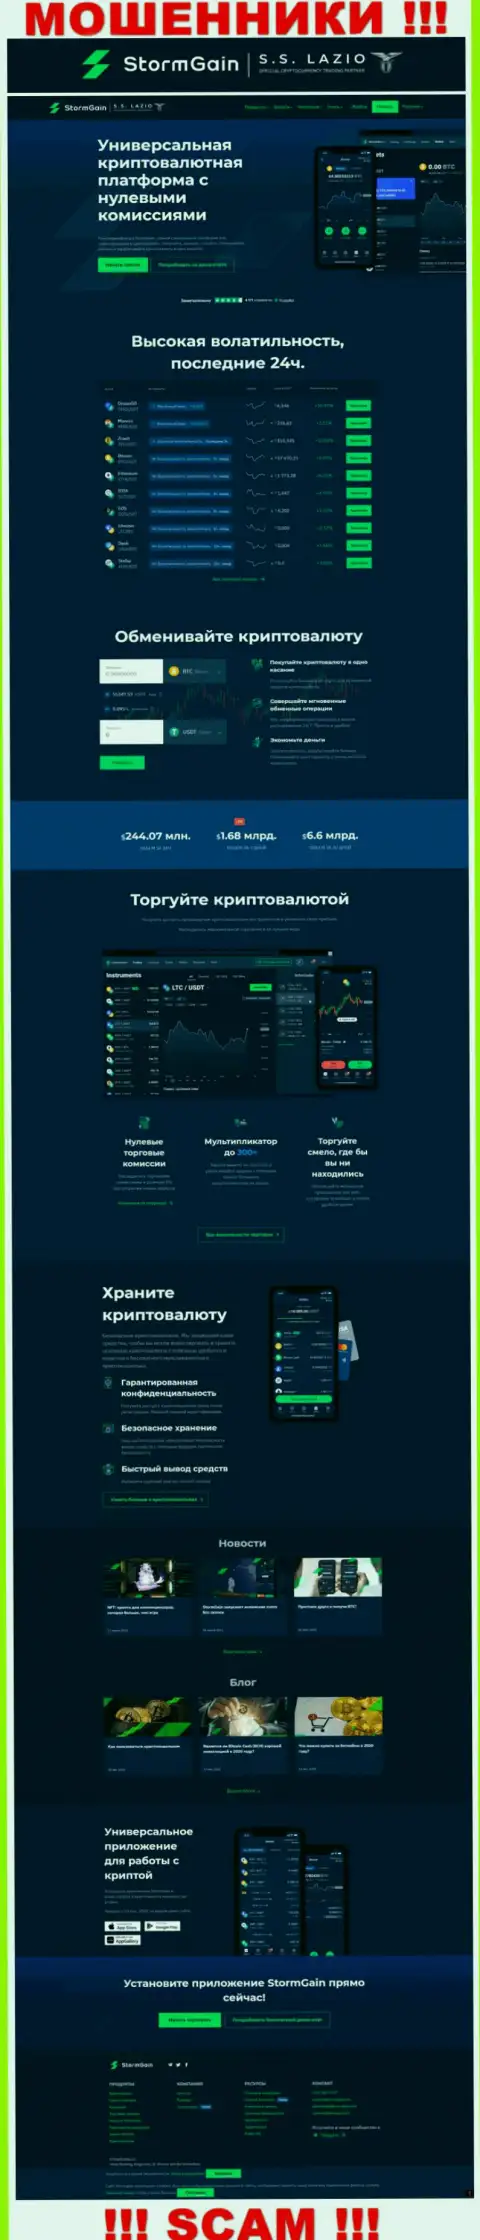 Официальный сайт internet мошенников и аферистов компании ШтормГаин Ком